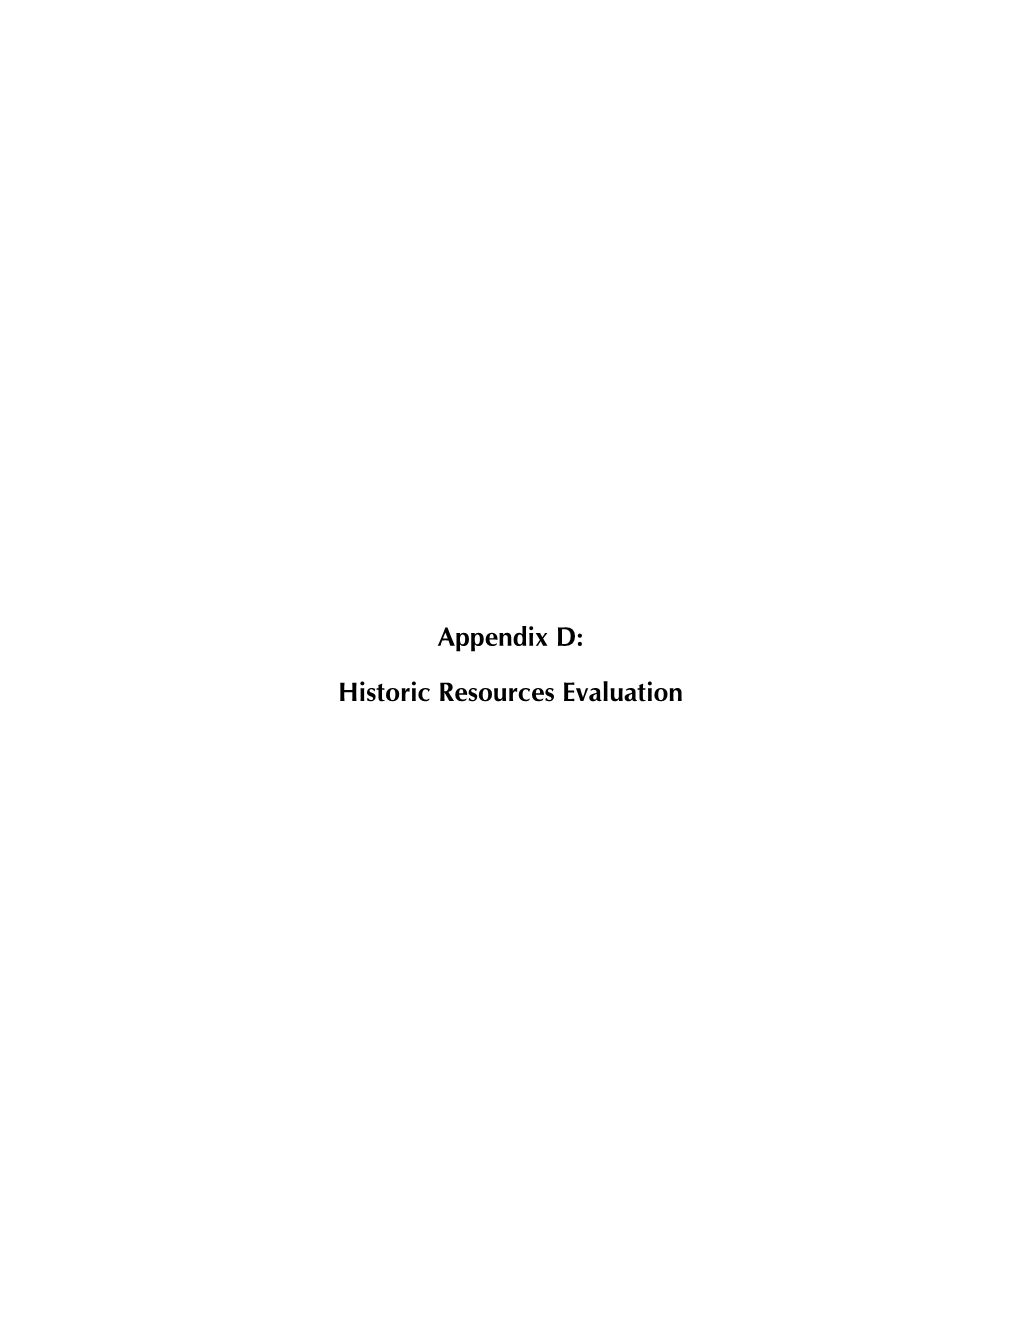 Appendix D: Historic Resources Evaluation